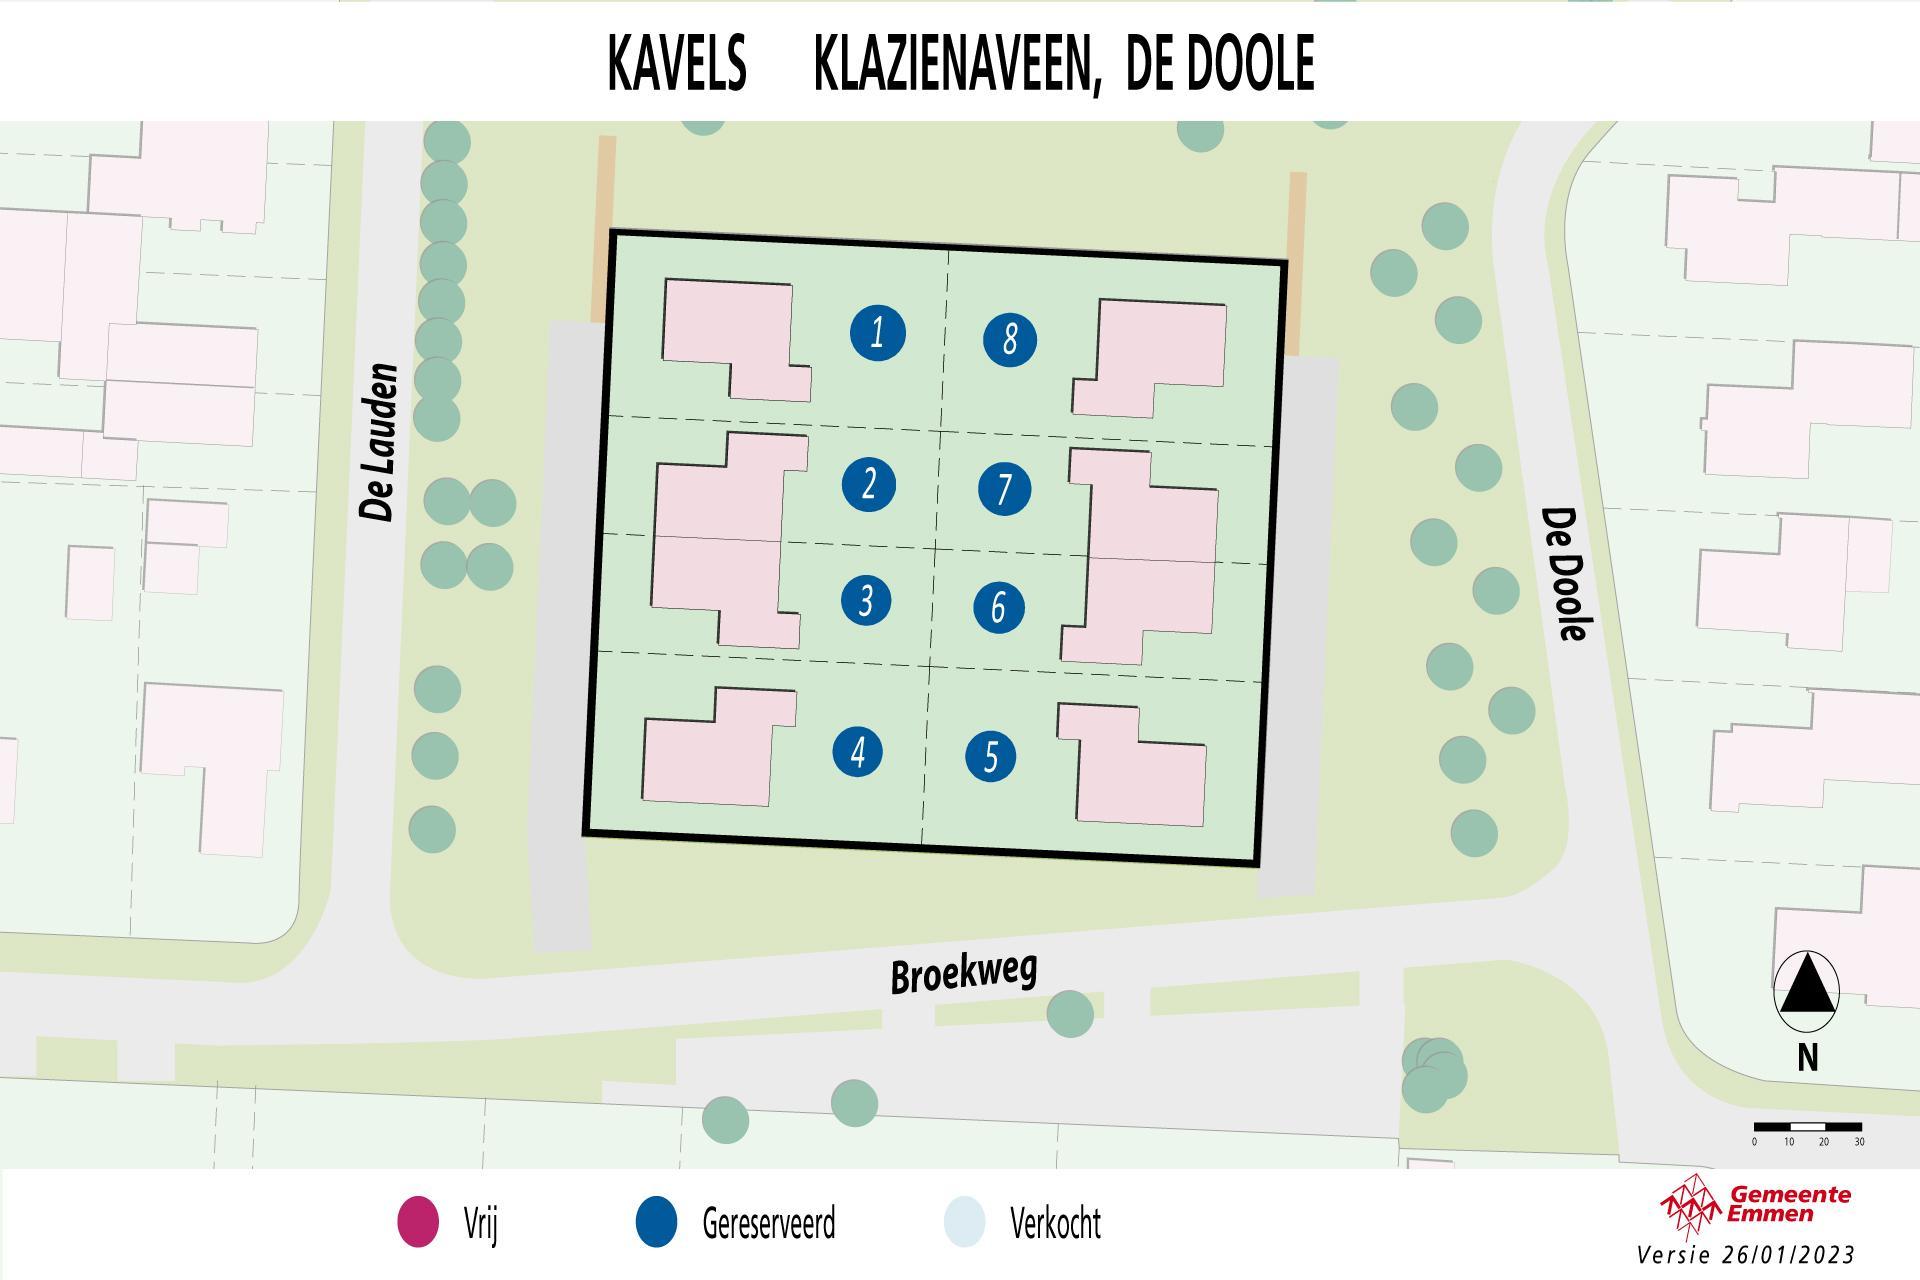 Kaart met kavels in Klazienaveen